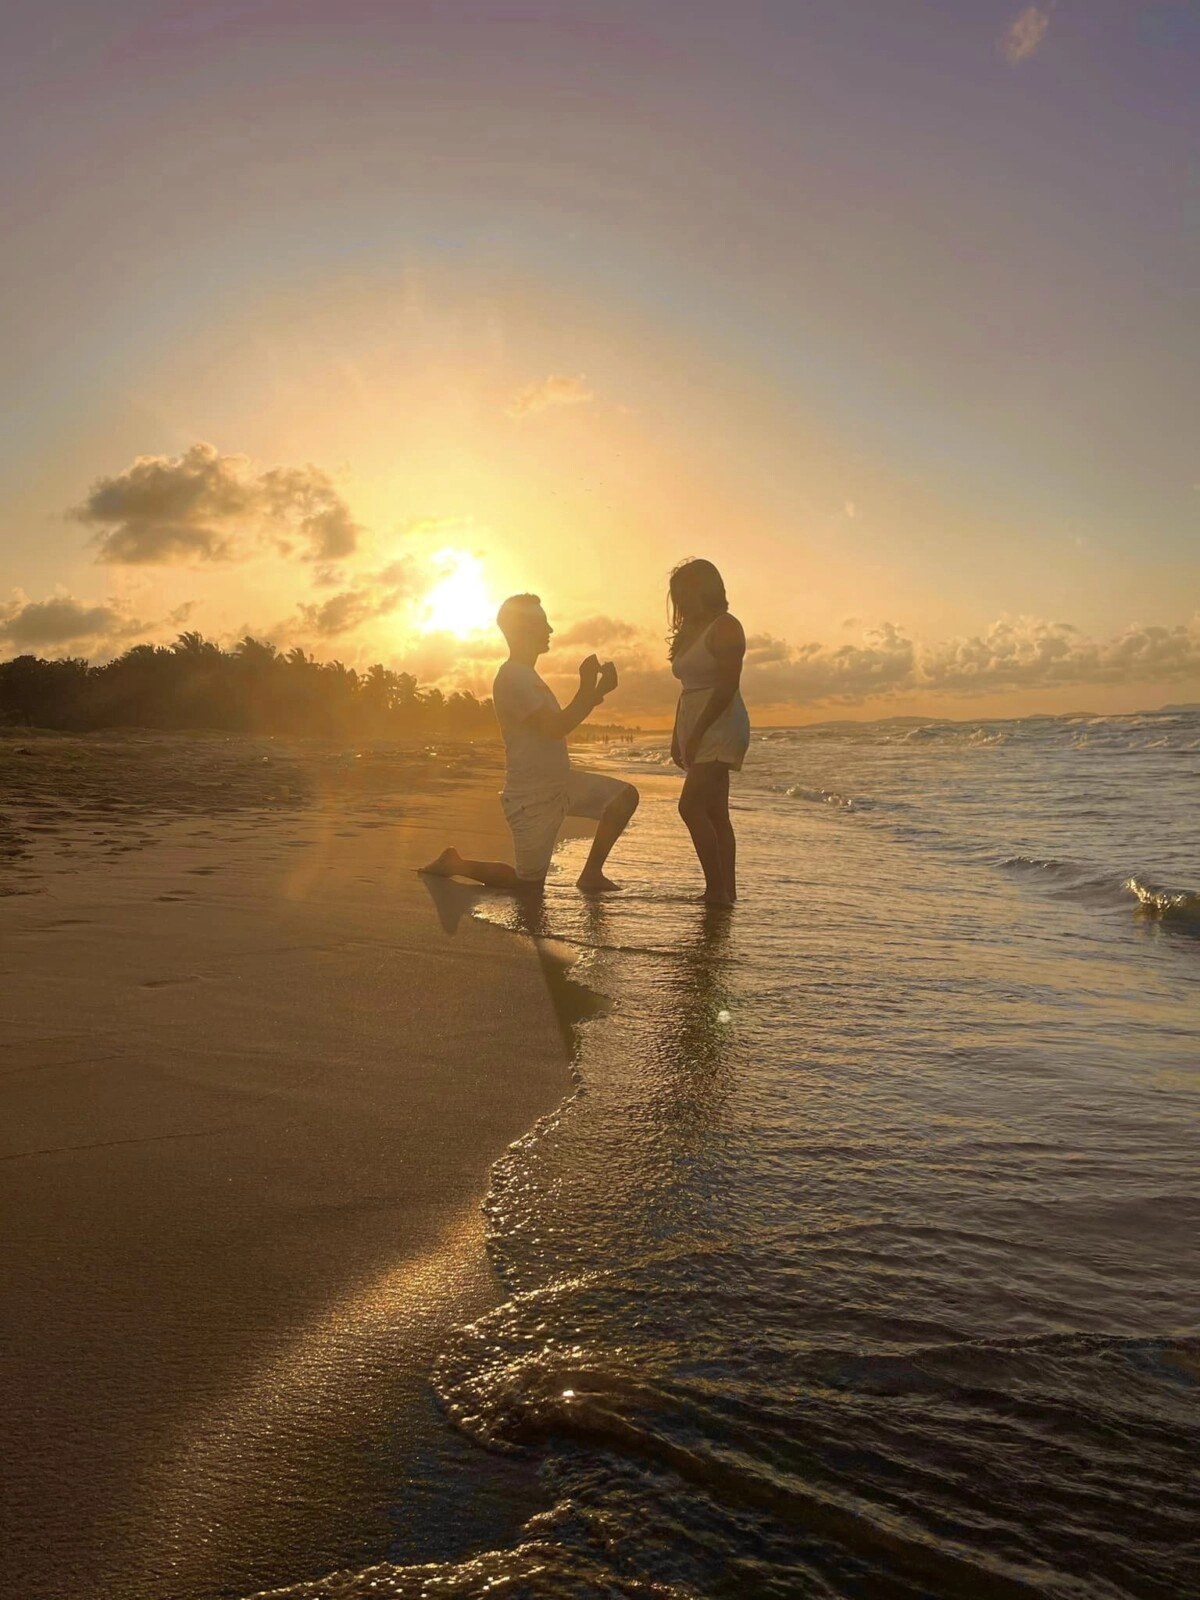 ¡Se nos casa! Periodista de canal 6 le propone matrimonio a su novia en la playa 01